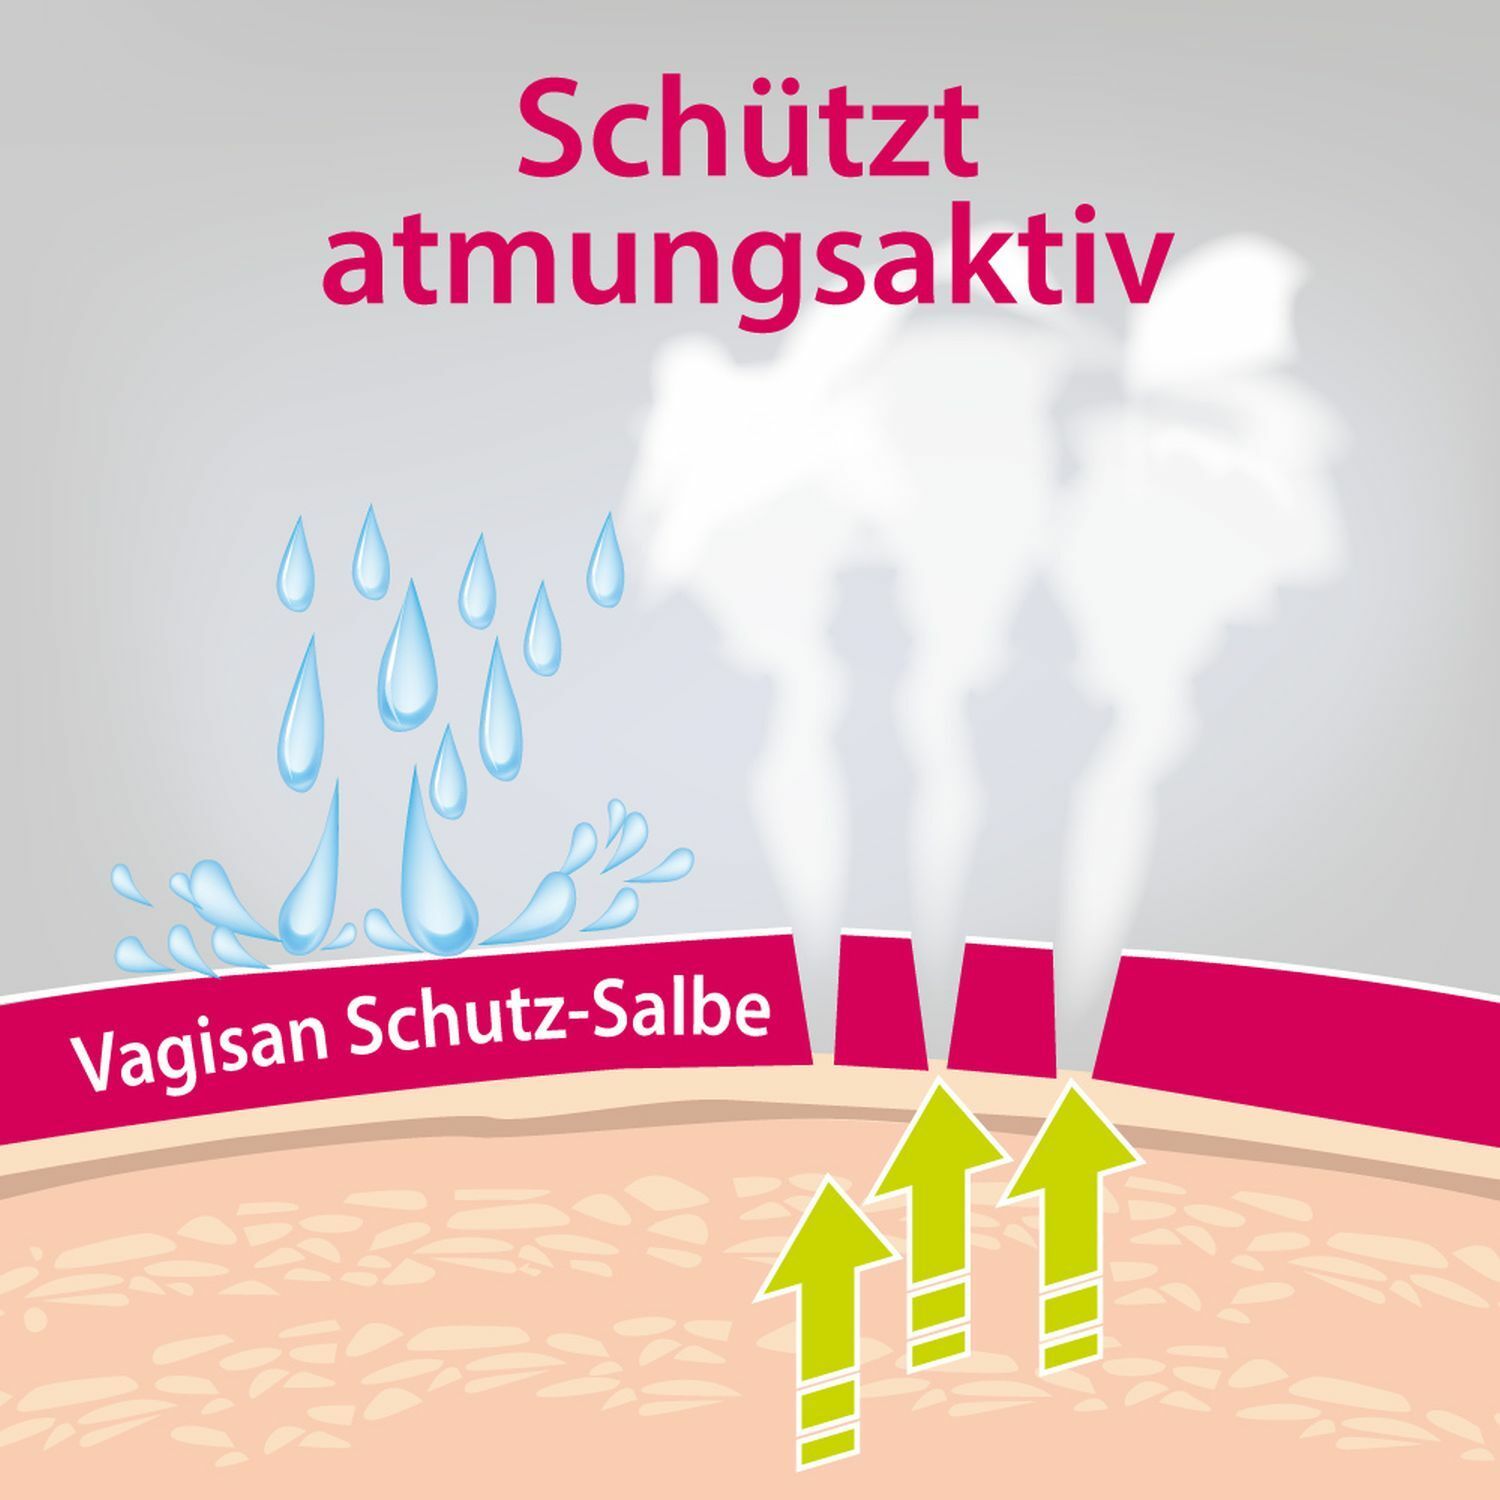 Vagisan Schutz-Salbe: Atmungsaktive Wundschutzcreme für den Intimbereich und zur täglichen Intimpflege